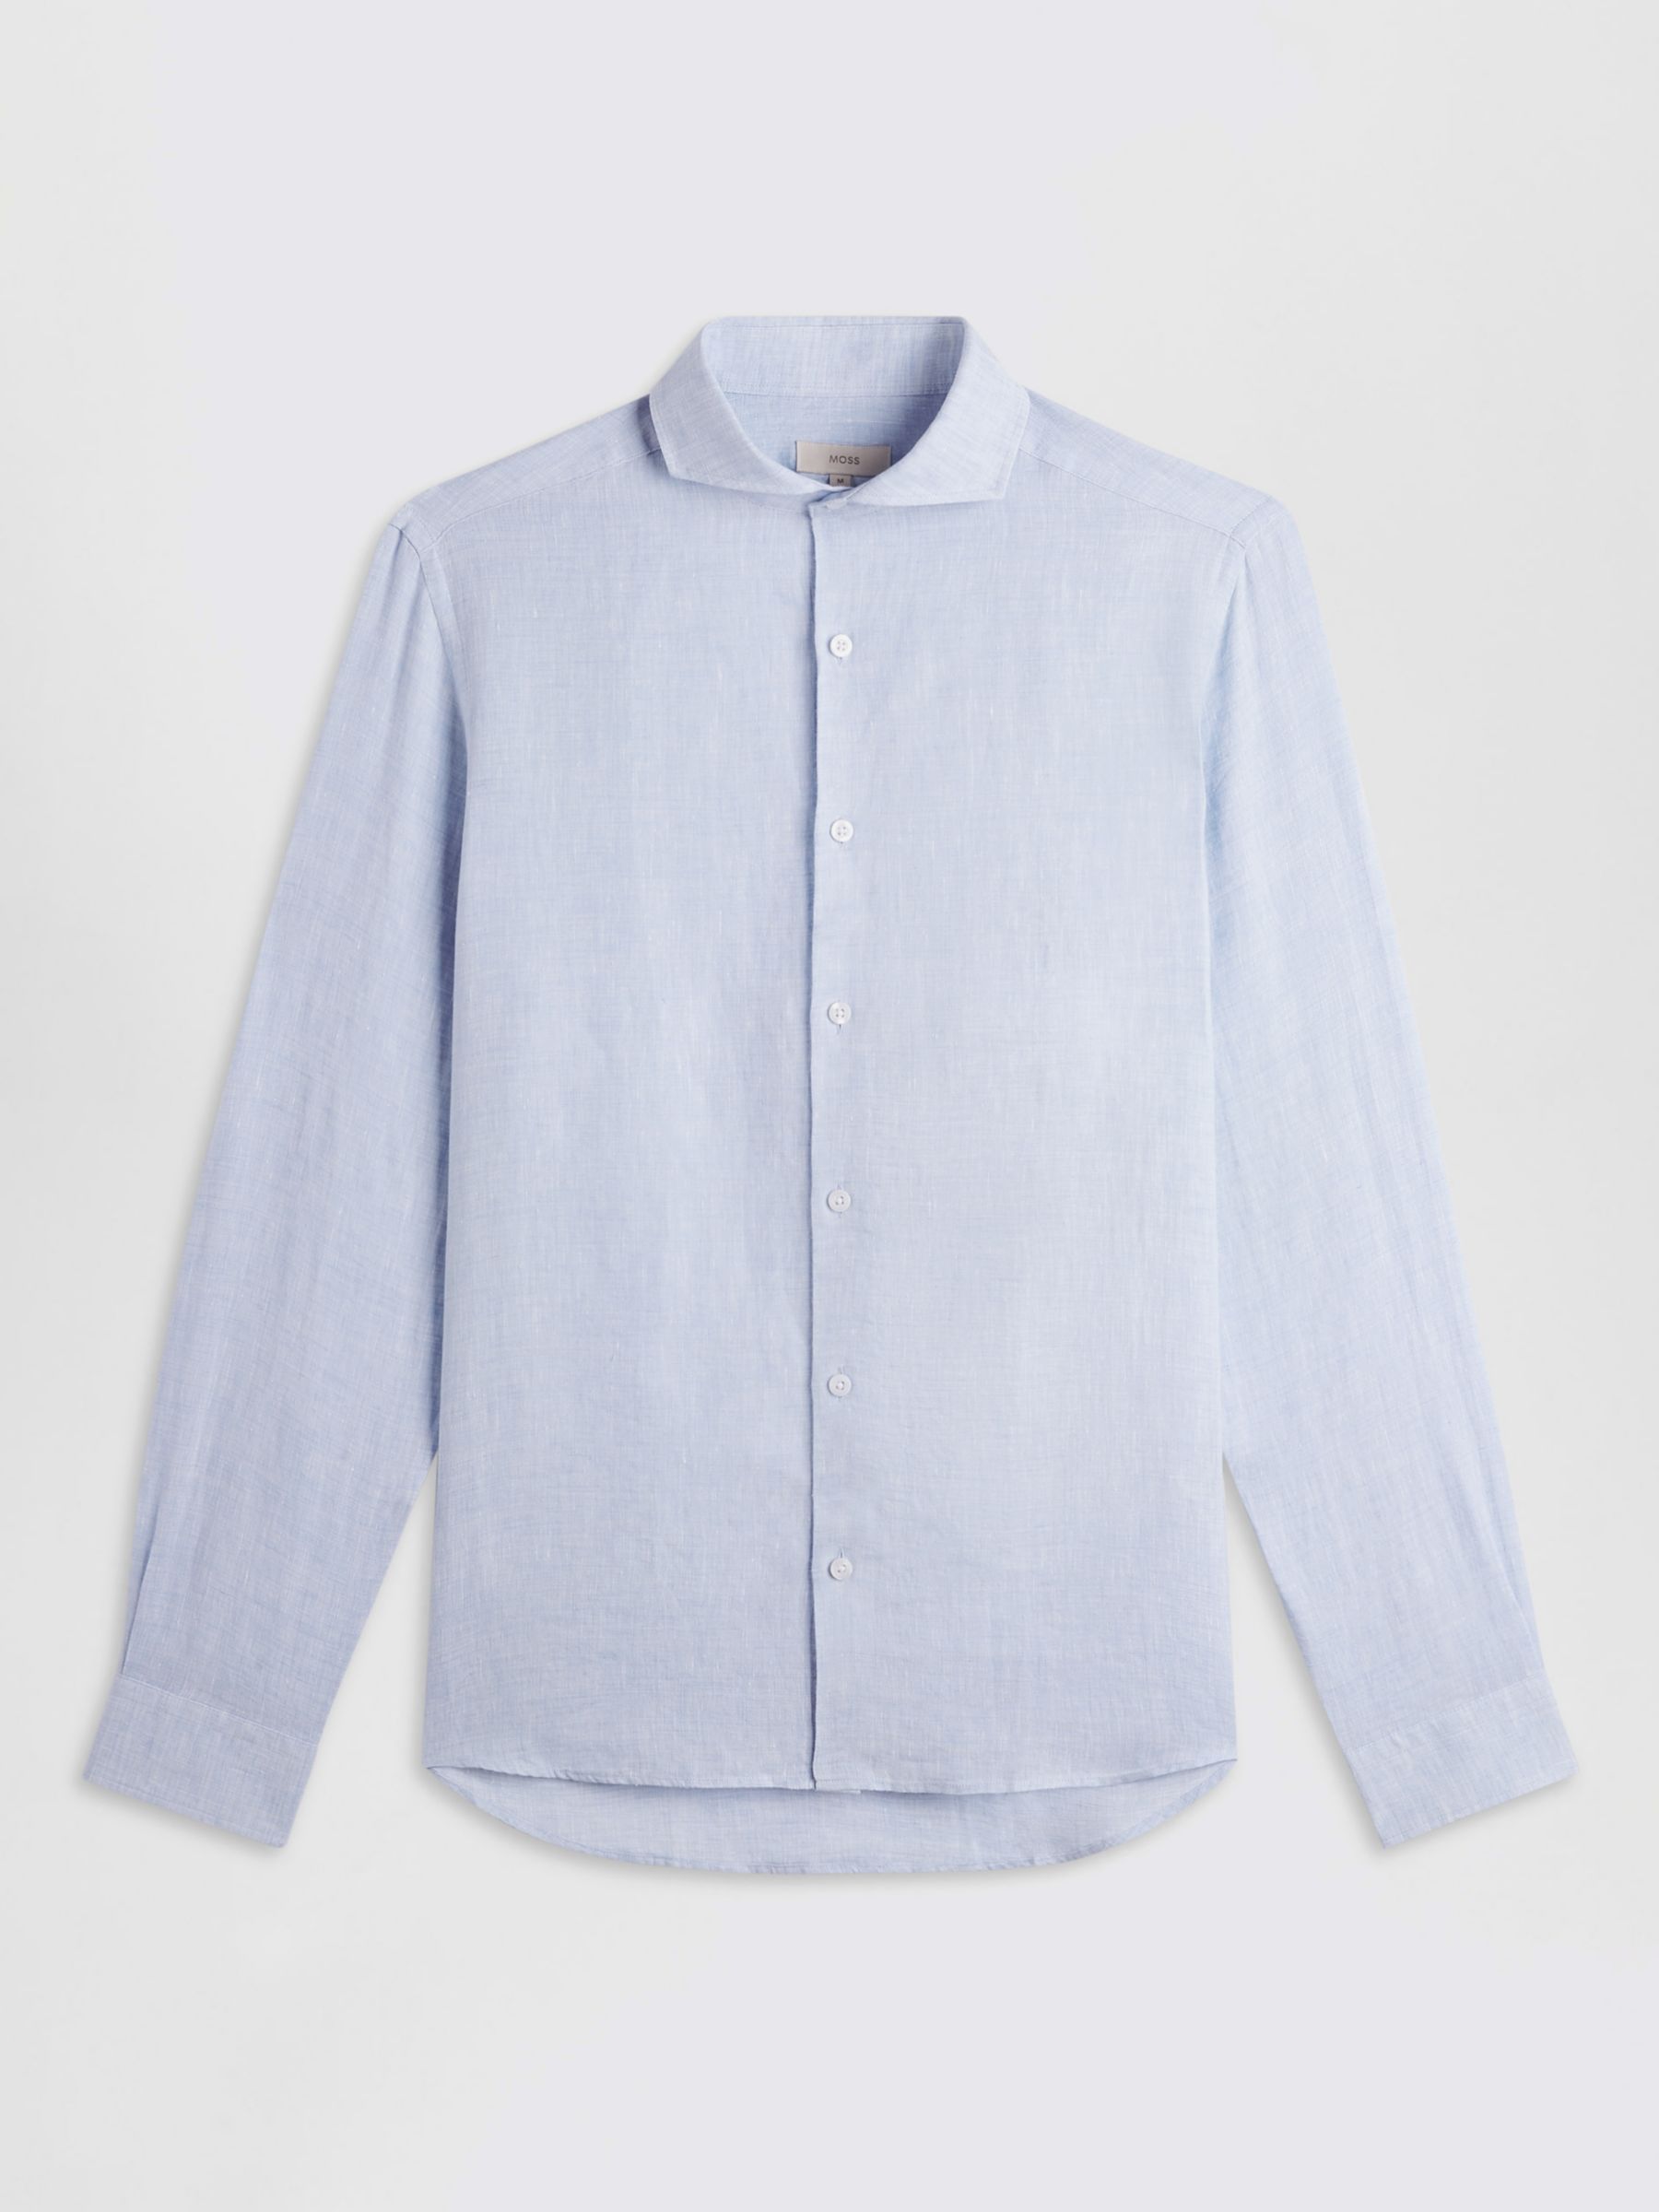 Moss Tailored Fit Linen Long Sleeve Shirt, Blue, S